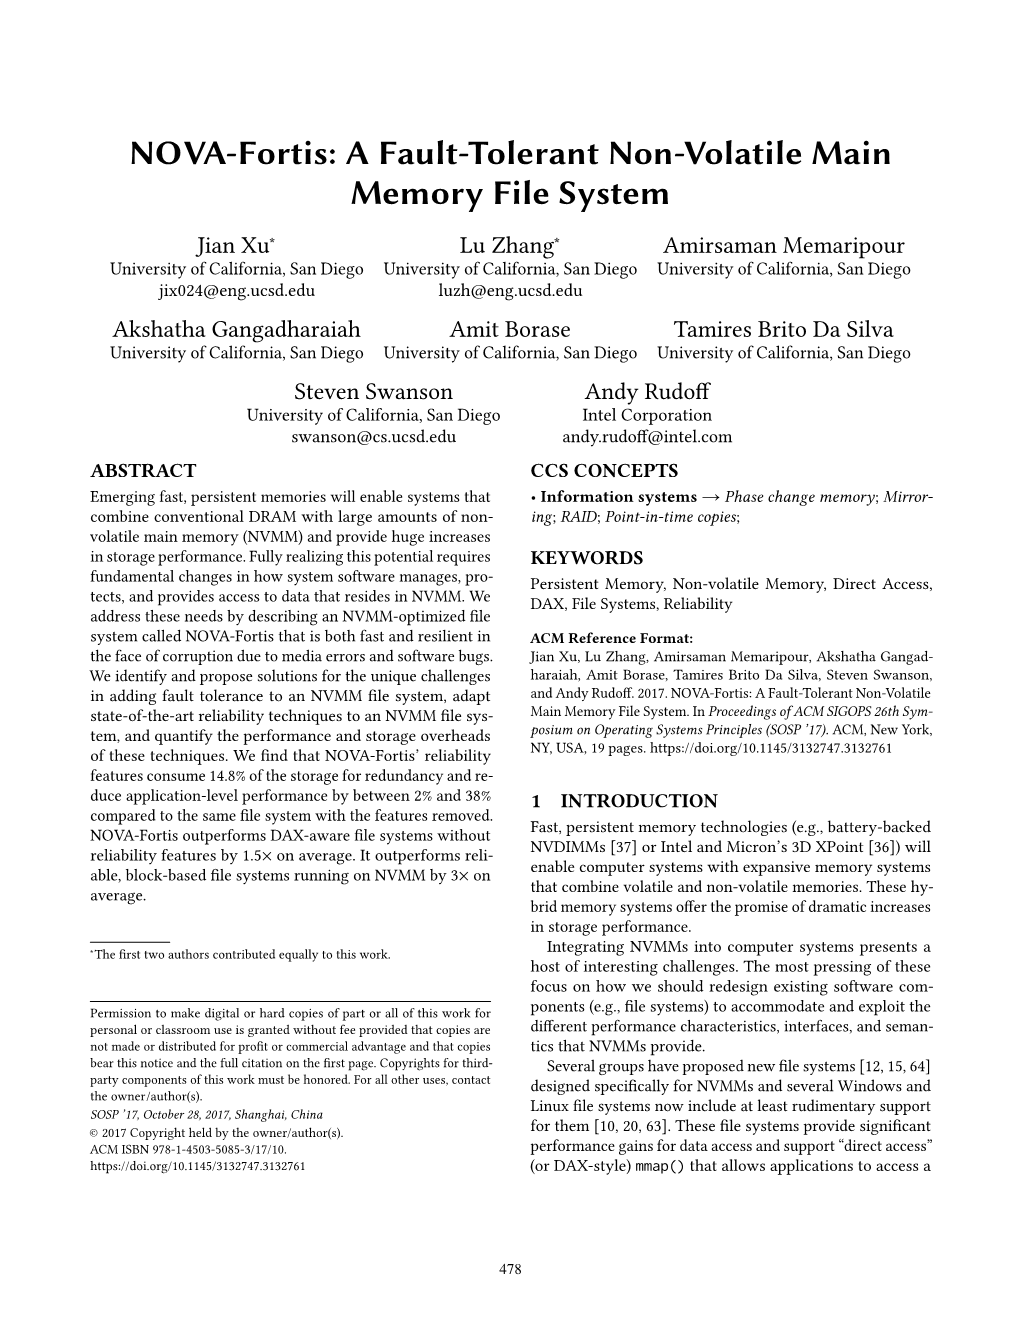 NOVA-Fortis: a Fault-Tolerant Non-Volatile Main Memory File